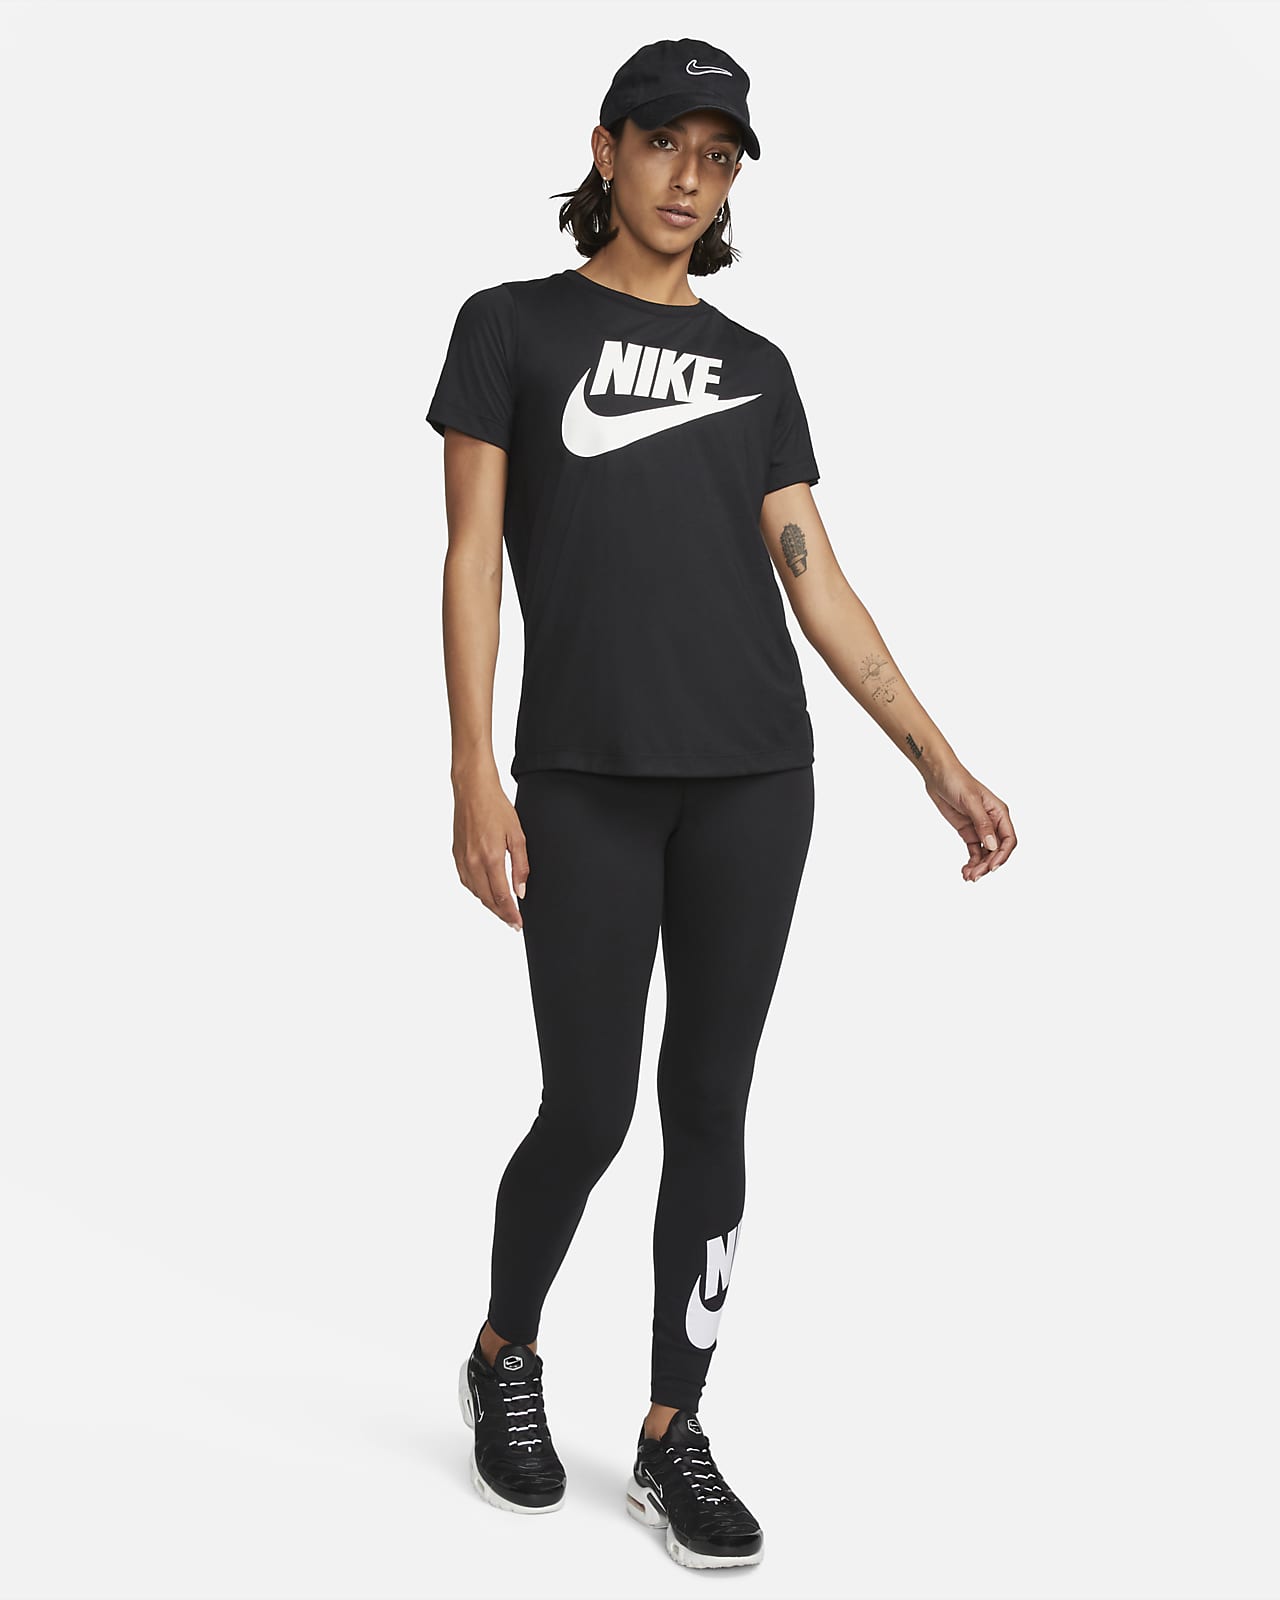 Legging Nike Dri-FIT noir sur